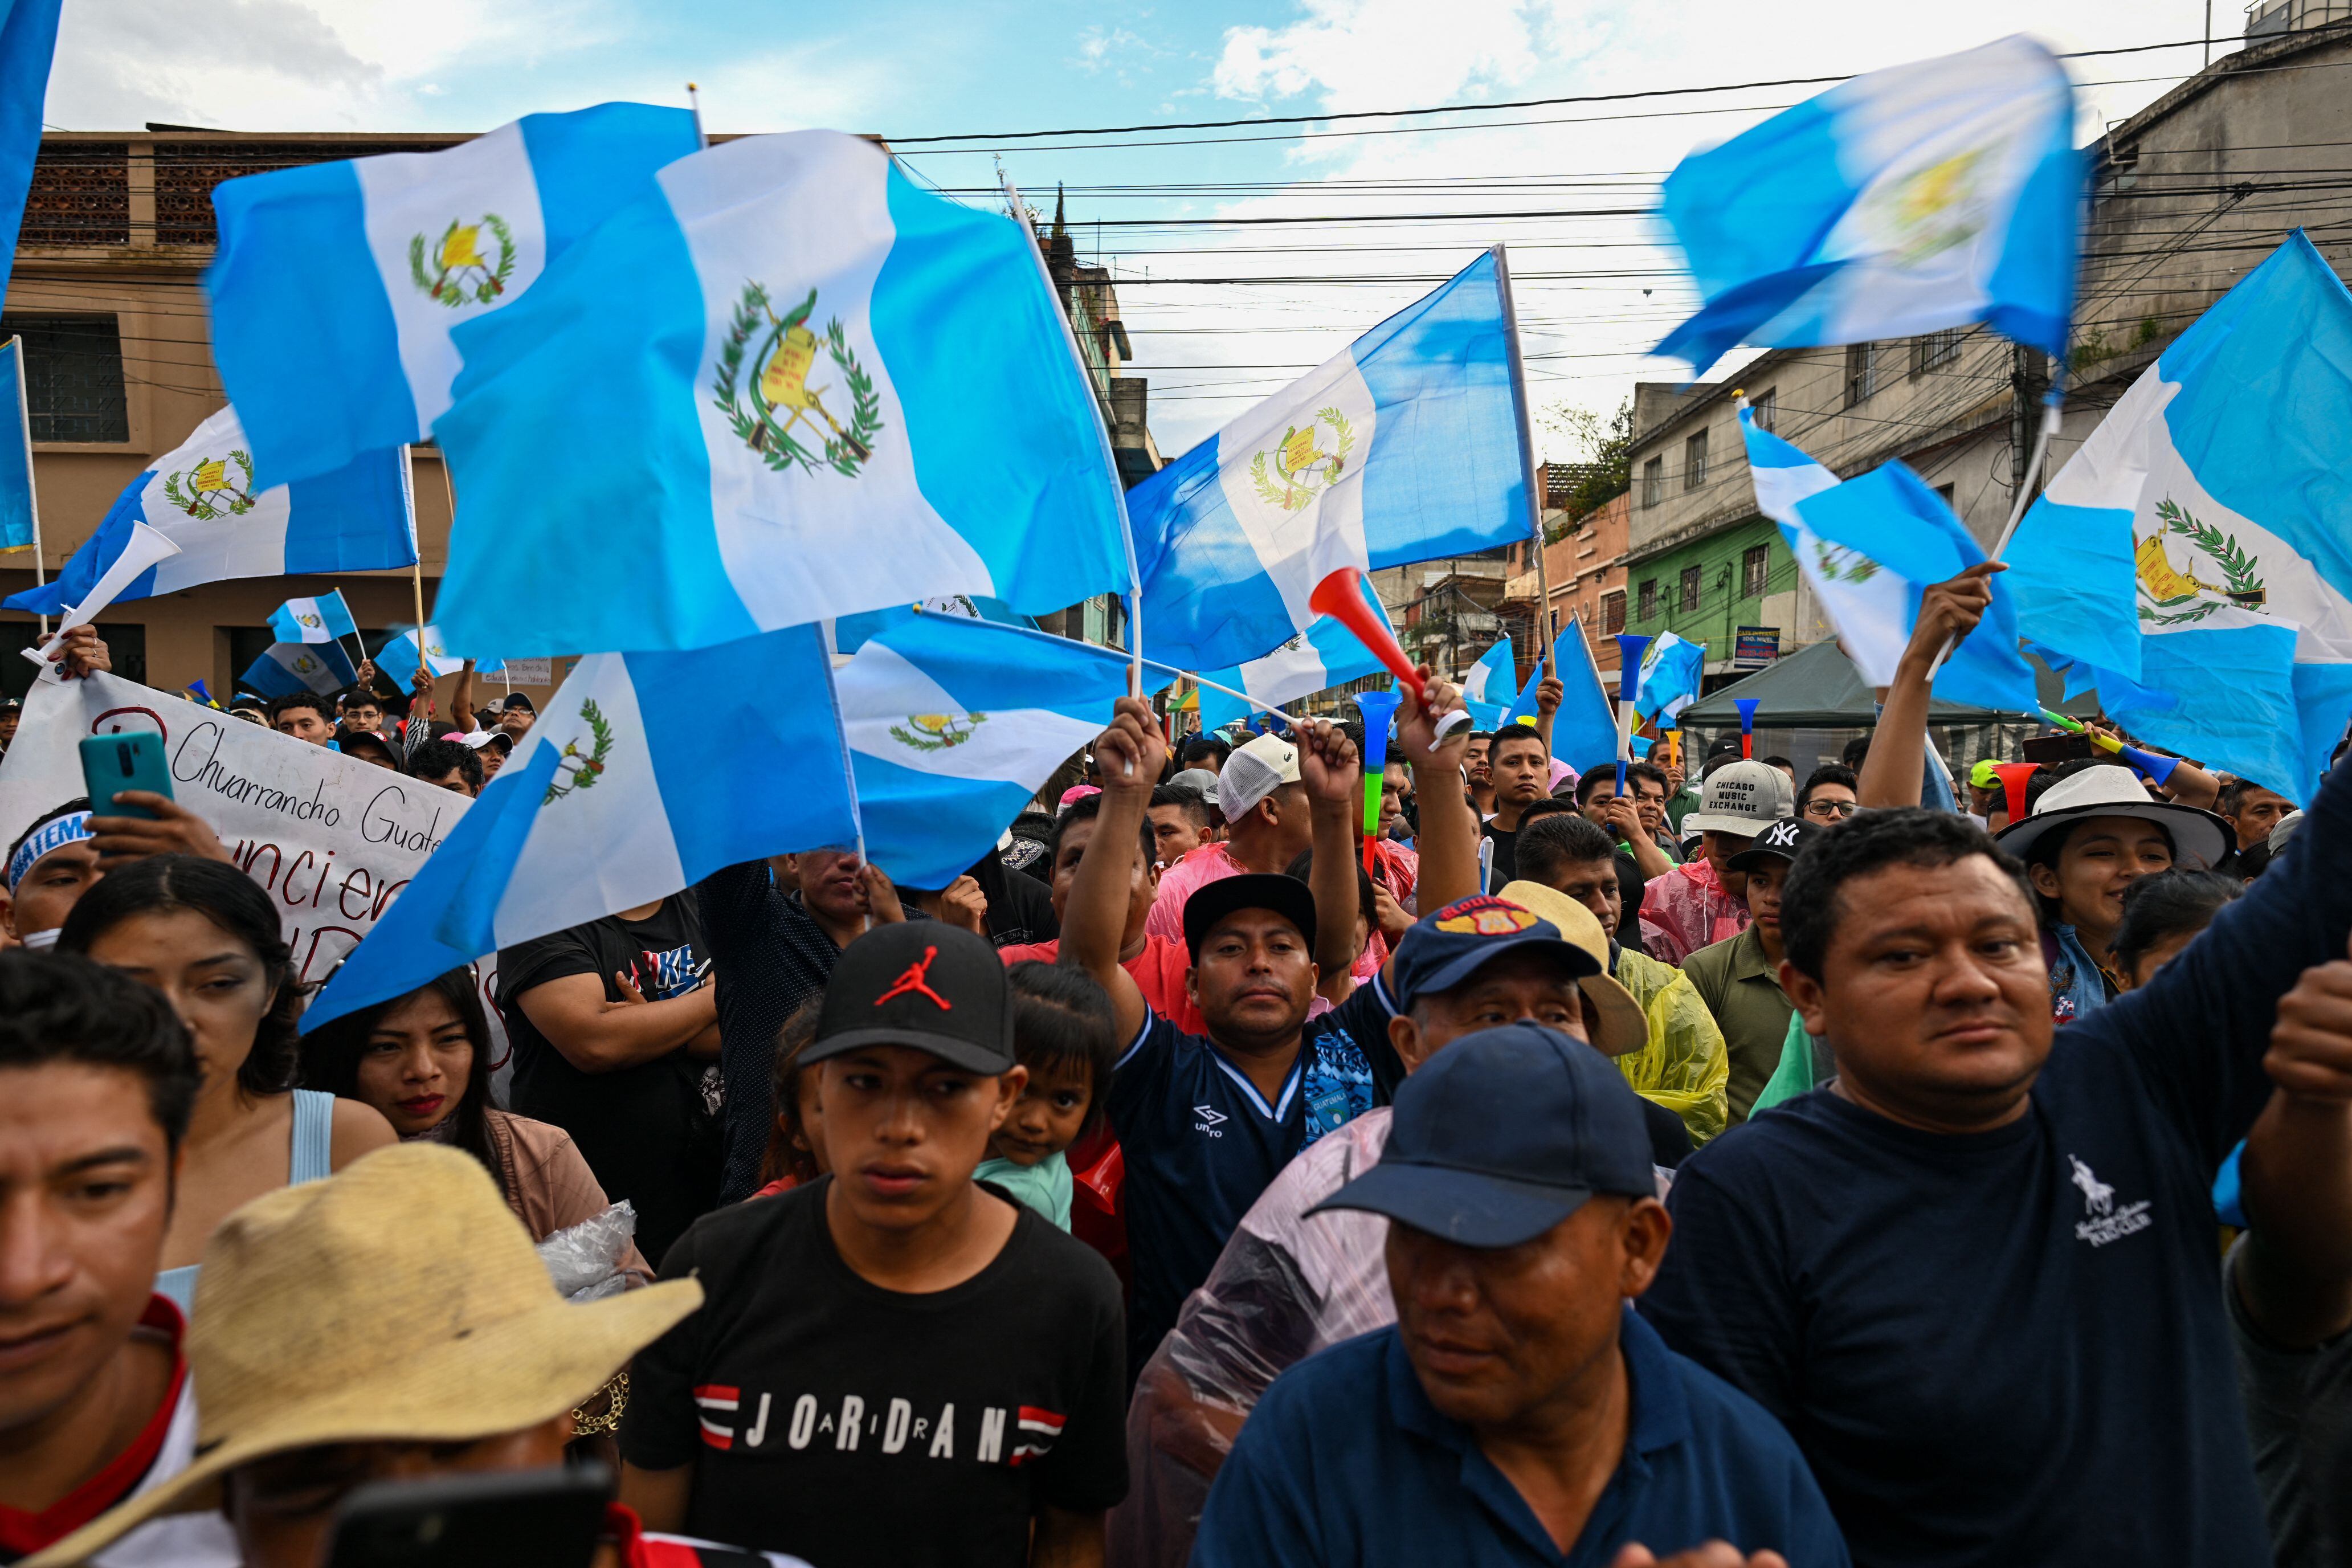 El jefe de la diplomacia estadounidense para América Latina, Brian Nichols, viajará a Guatemala y El Salvador del 23 al 27 de octubre, donde mantendrá conversaciones con el presidente electo Bernardo Arévalo sobre el proceso de “transición” en medio de la crisis política del país.